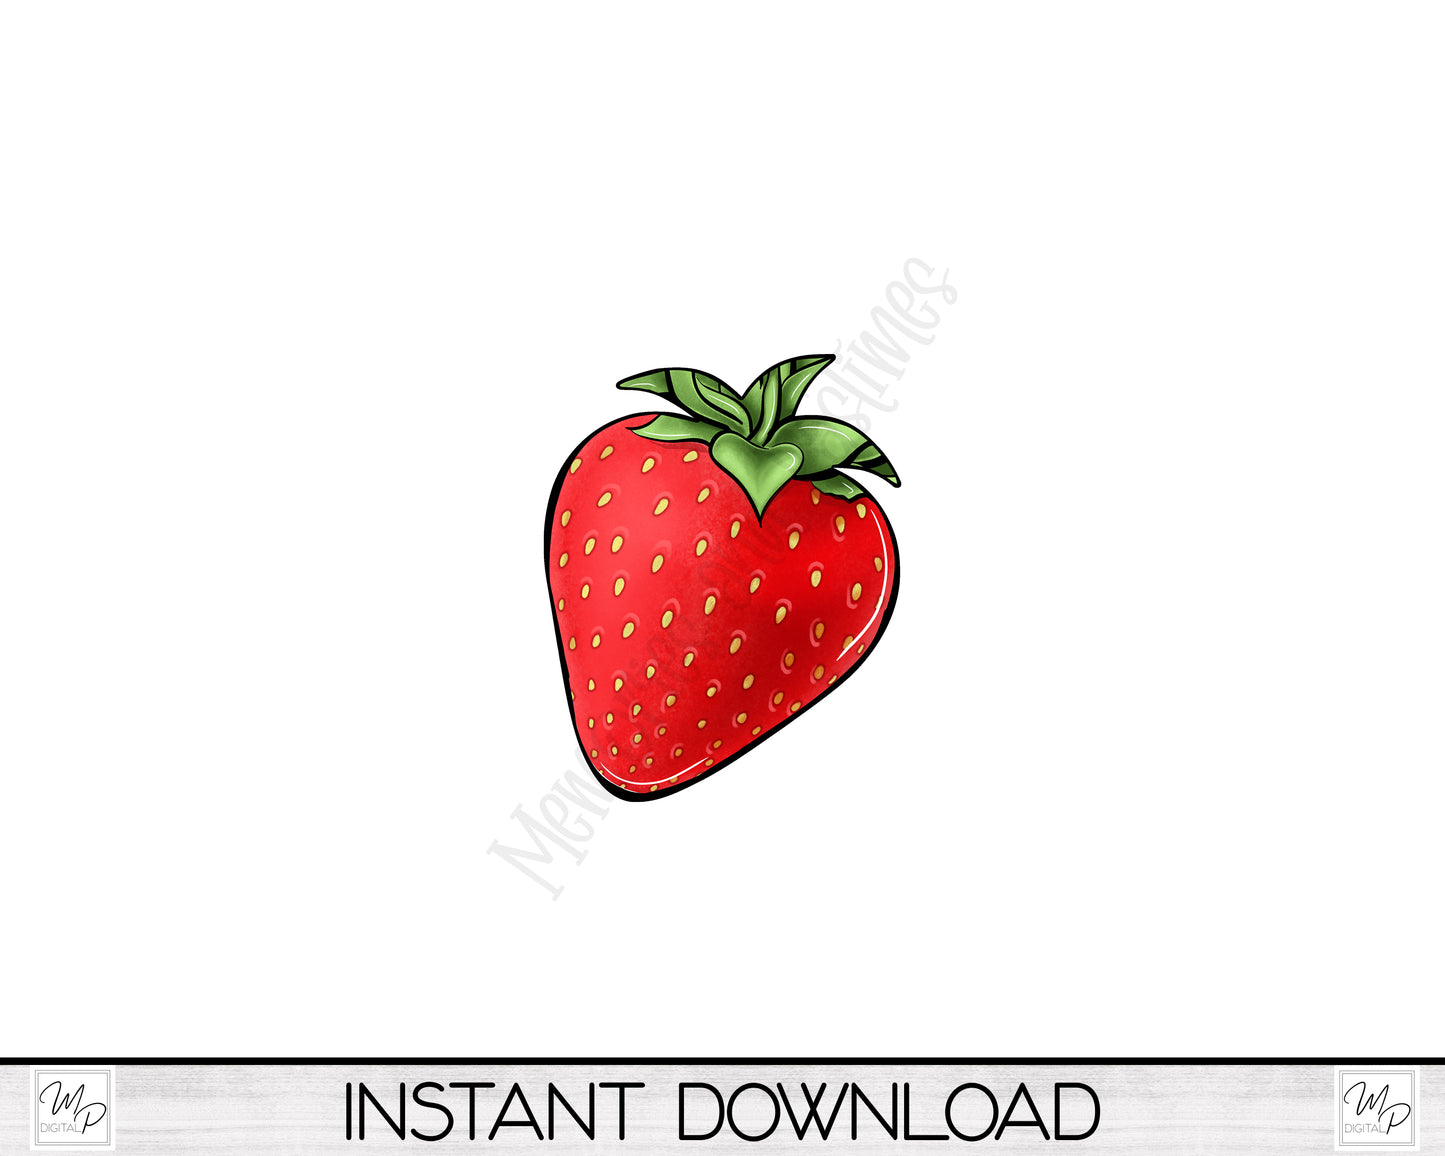 Strawberry Earring Design, PNG Sublimation Design, Digital Download